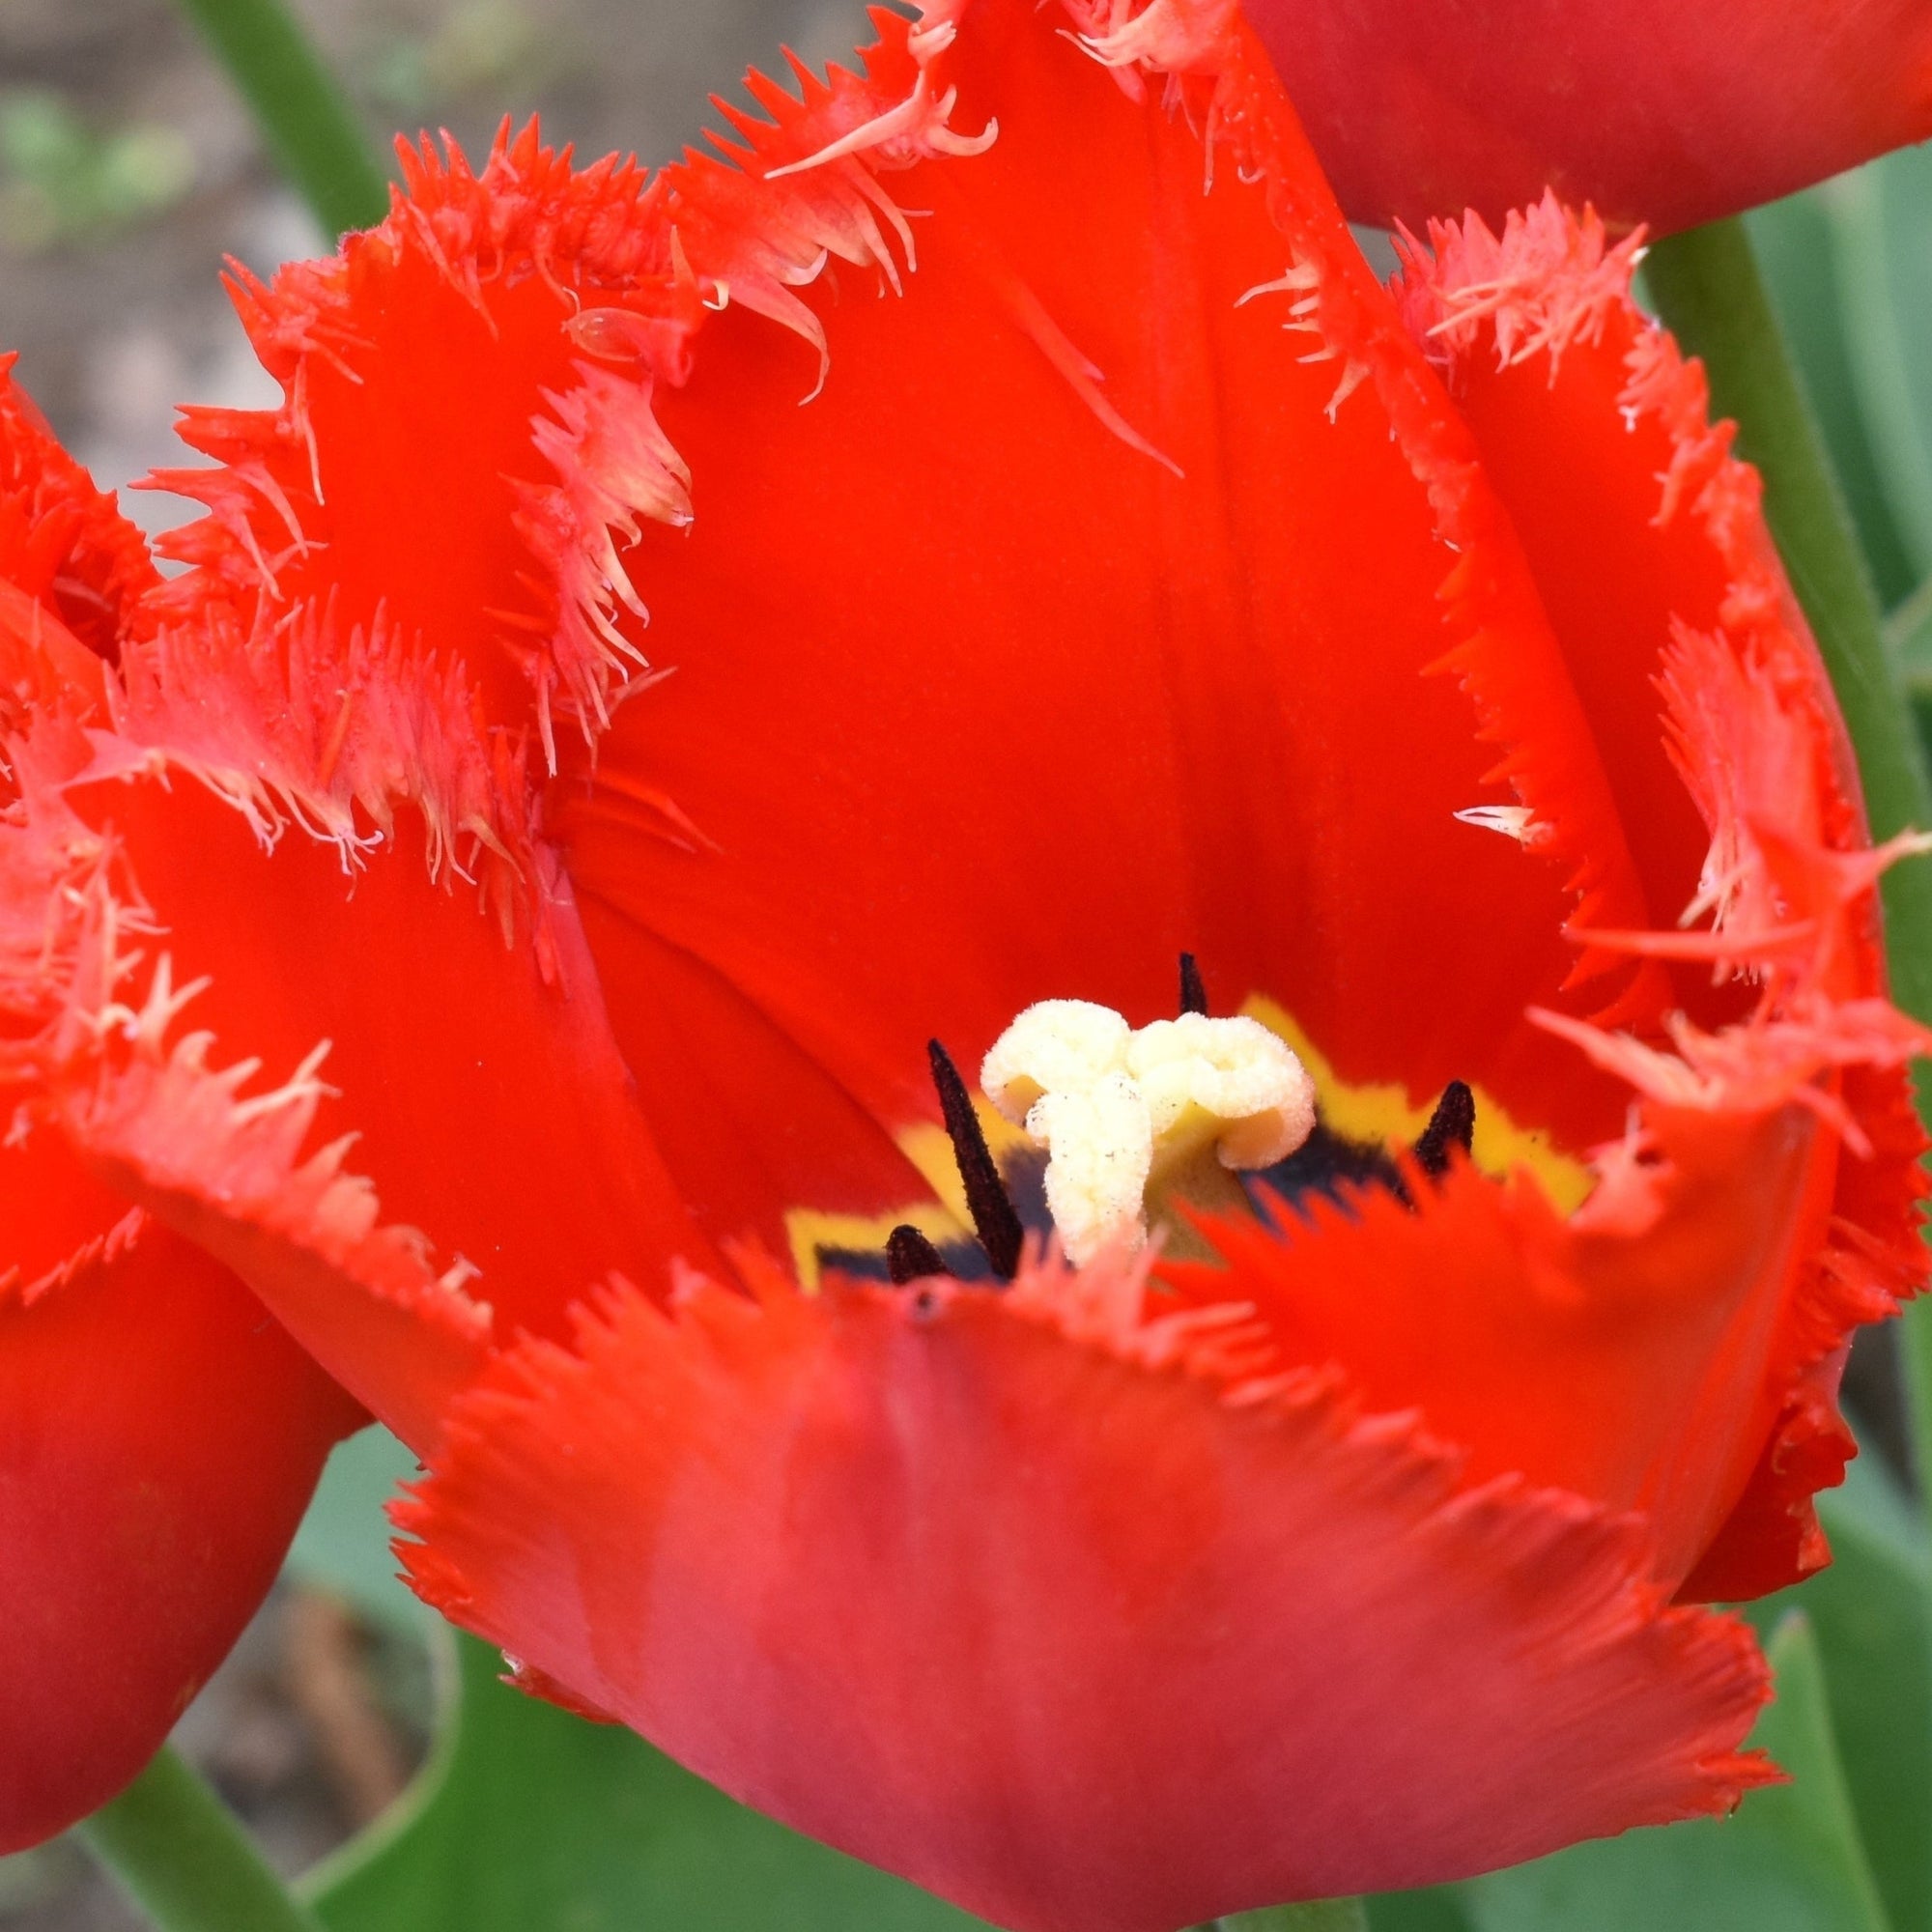 Tulip 'Crystal Beauty' (6 Bulbs)